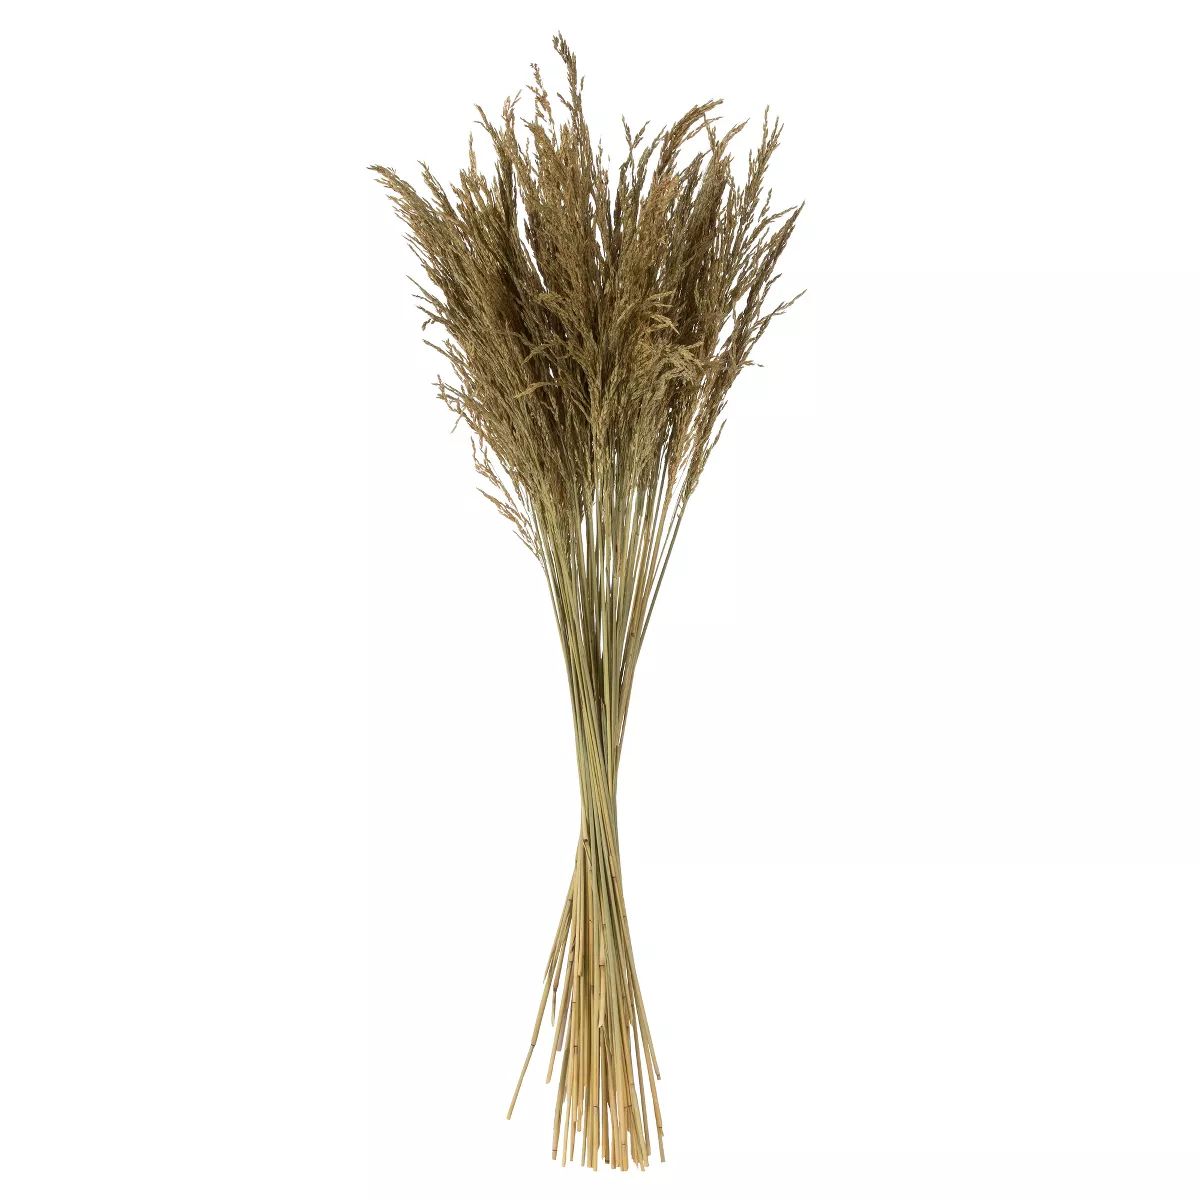 Vickerman 36" Congo Grass Bundle, 8 oz Dried | Target